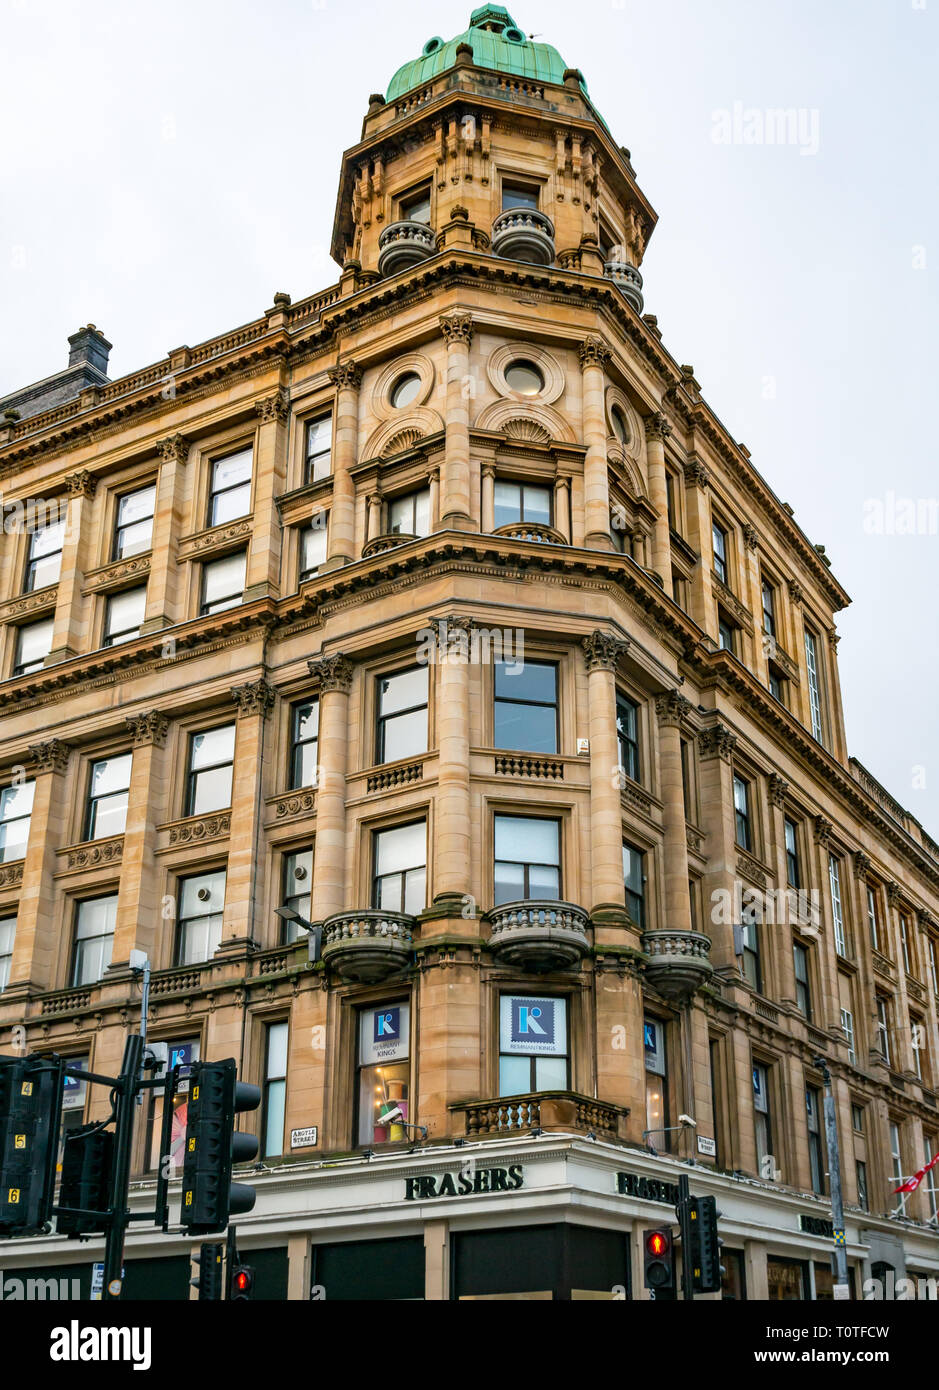 Edificio victoriano de Frasers Department Store, en la esquina de Buchanan y Argyle Street, Glasgow, Escocia, Reino Unido Foto de stock